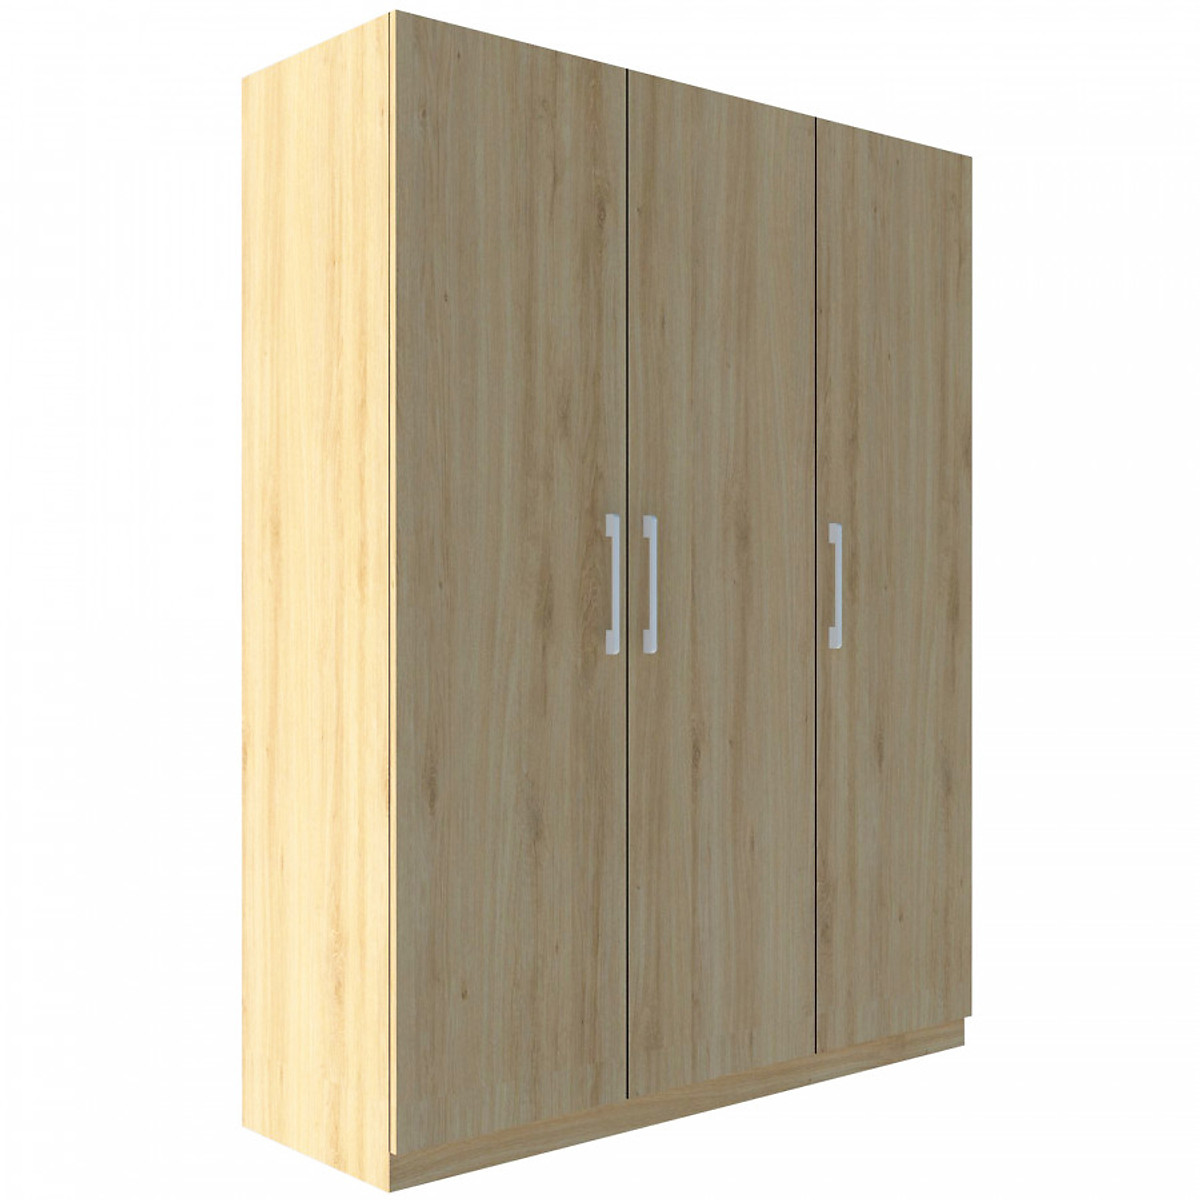 Tủ quần áo gỗ MDF Tundo 3 cánh 2 ngăn kéo màu sồi 140 x 55 x 200cm